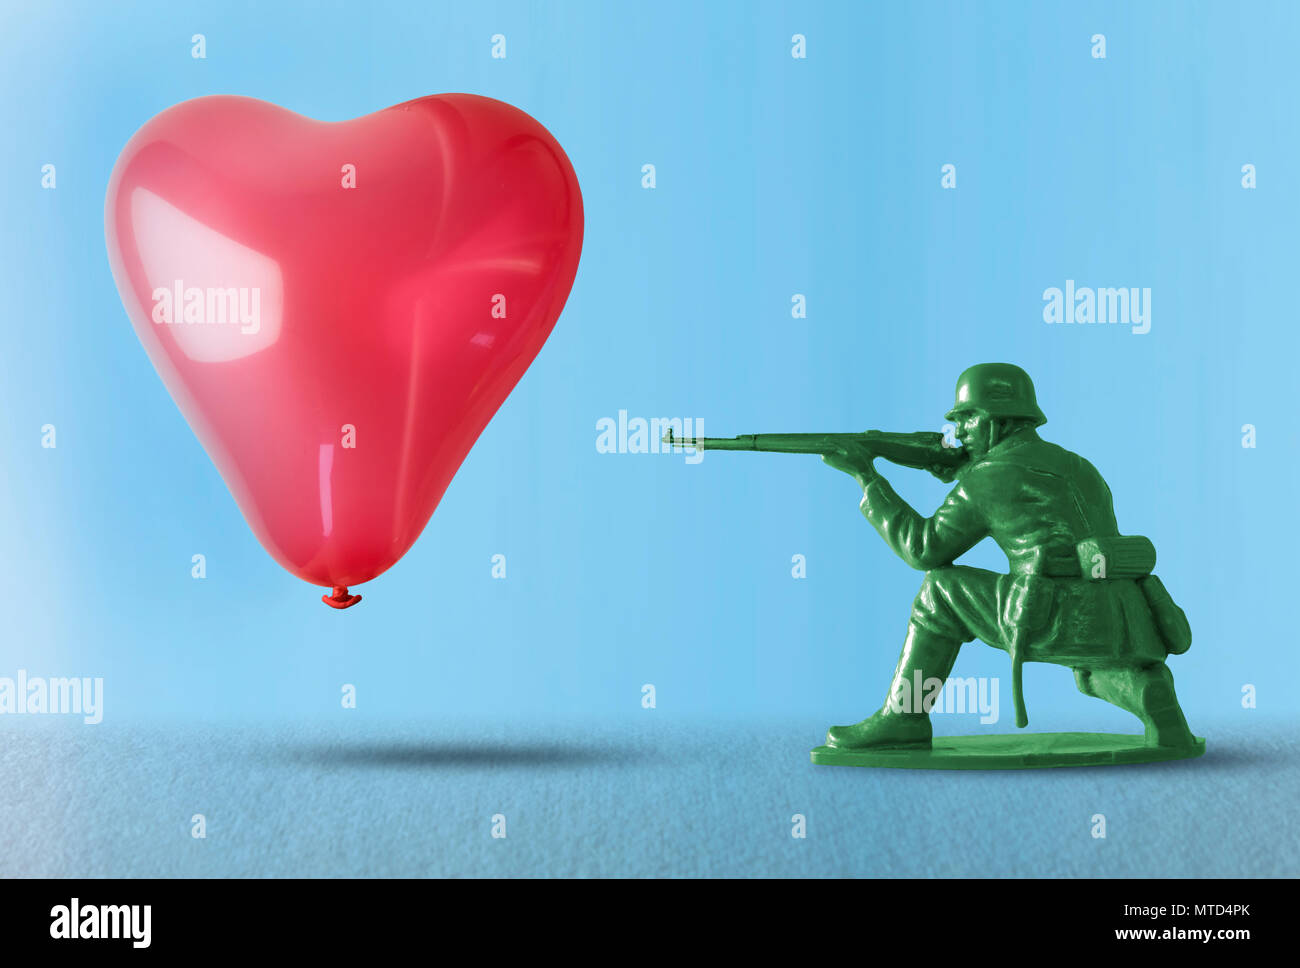 Globo de corazón flotando como destino para un soldado con pistola de juguete que representa el impacto negativo de la guerra y la destrucción de la corriente de amor con pistola Foto de stock